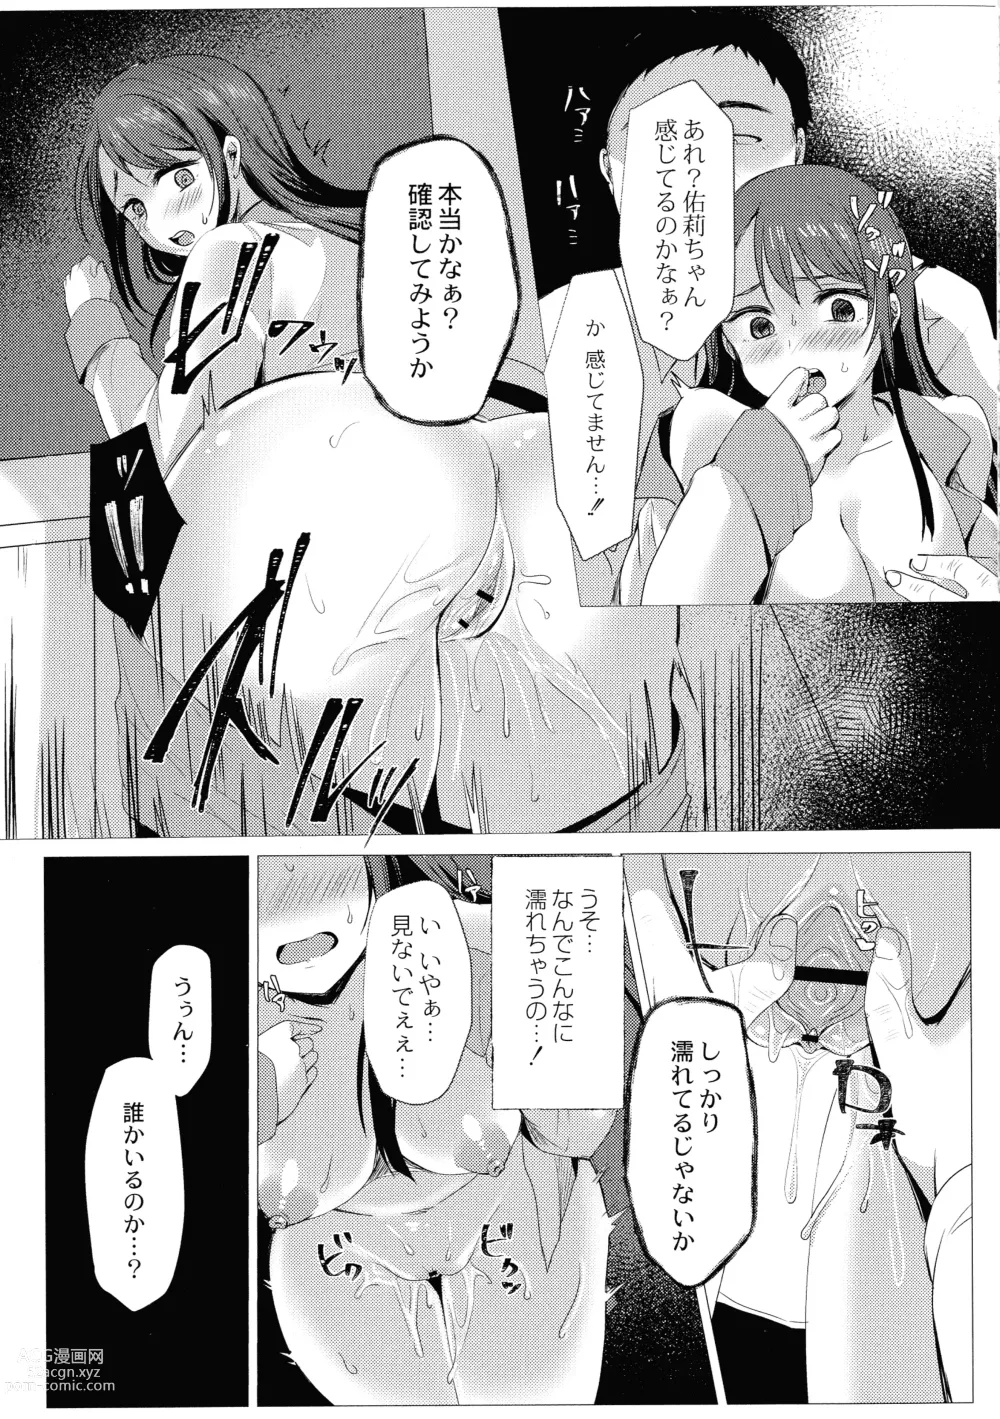 Page 13 of manga Mesuochi.